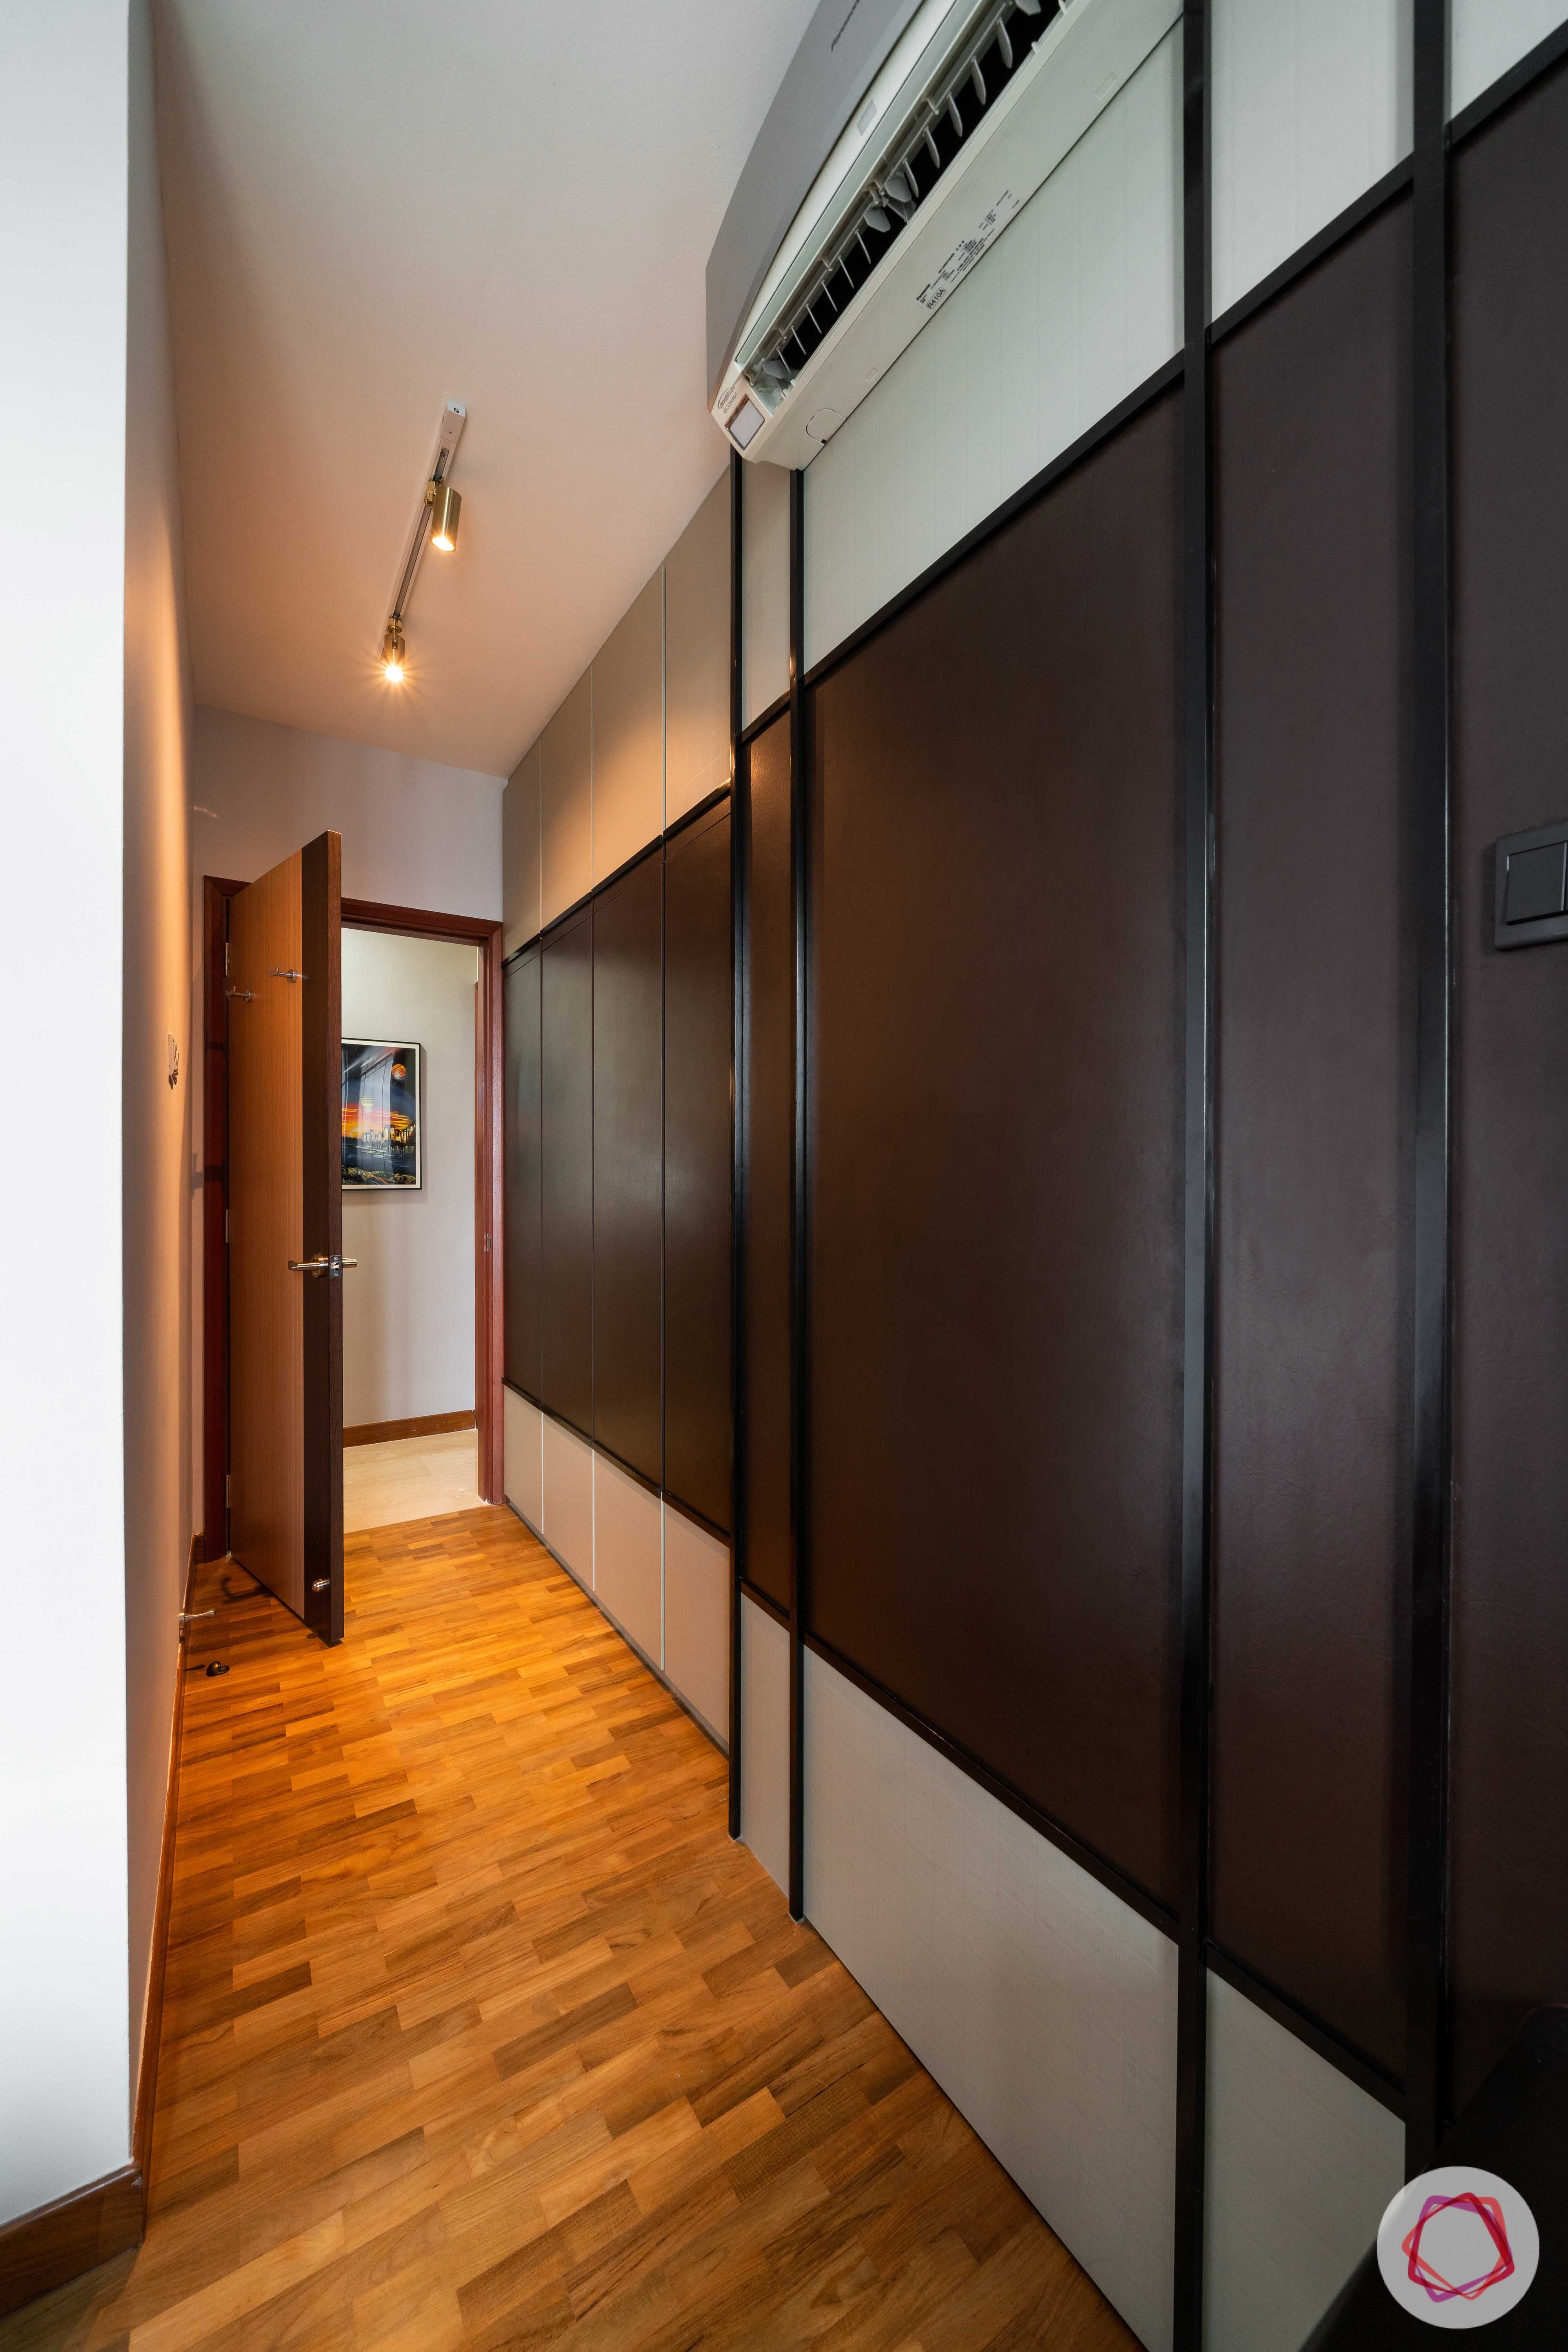 kd-panel-wardrobe-bedroom-wooden-flooring-track-lights